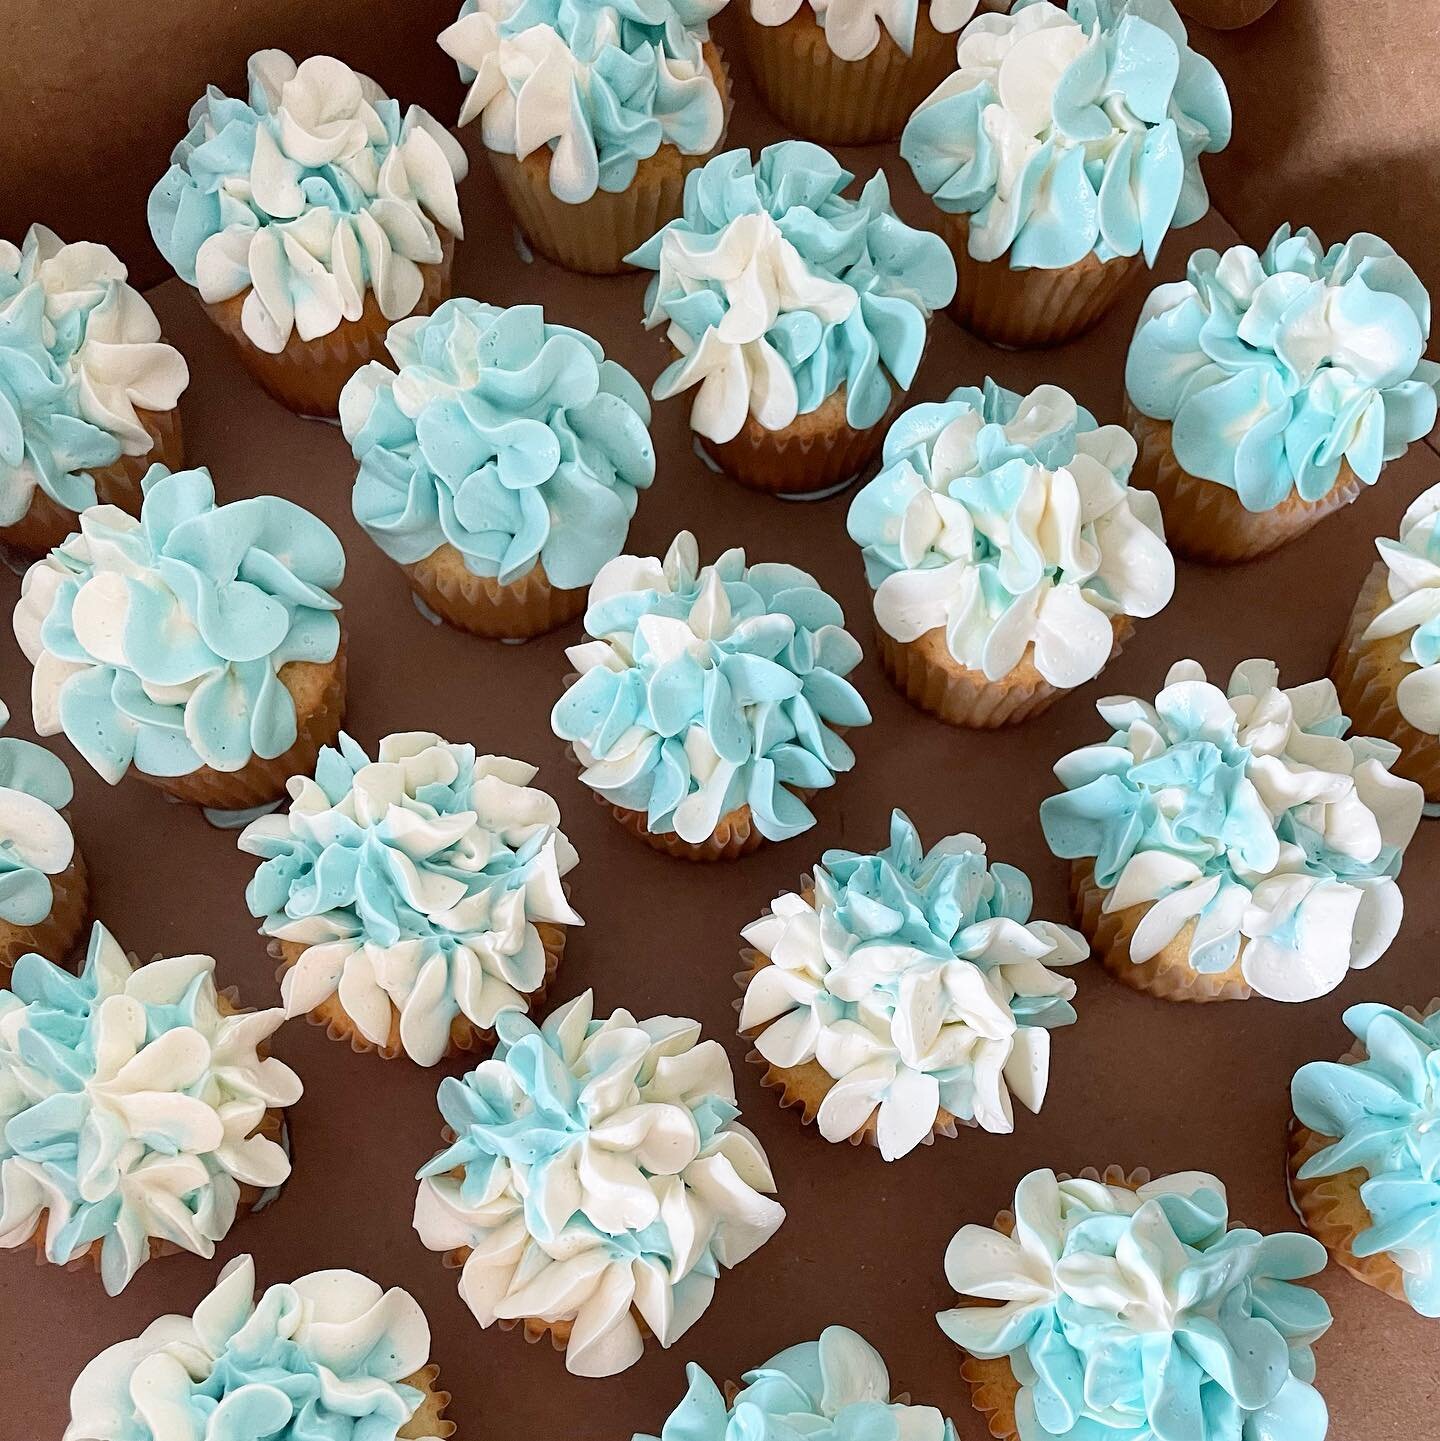 The bride wanted a garden of cupcakes 💙

#newportwedding 
#hydrangea 
#cupcakes